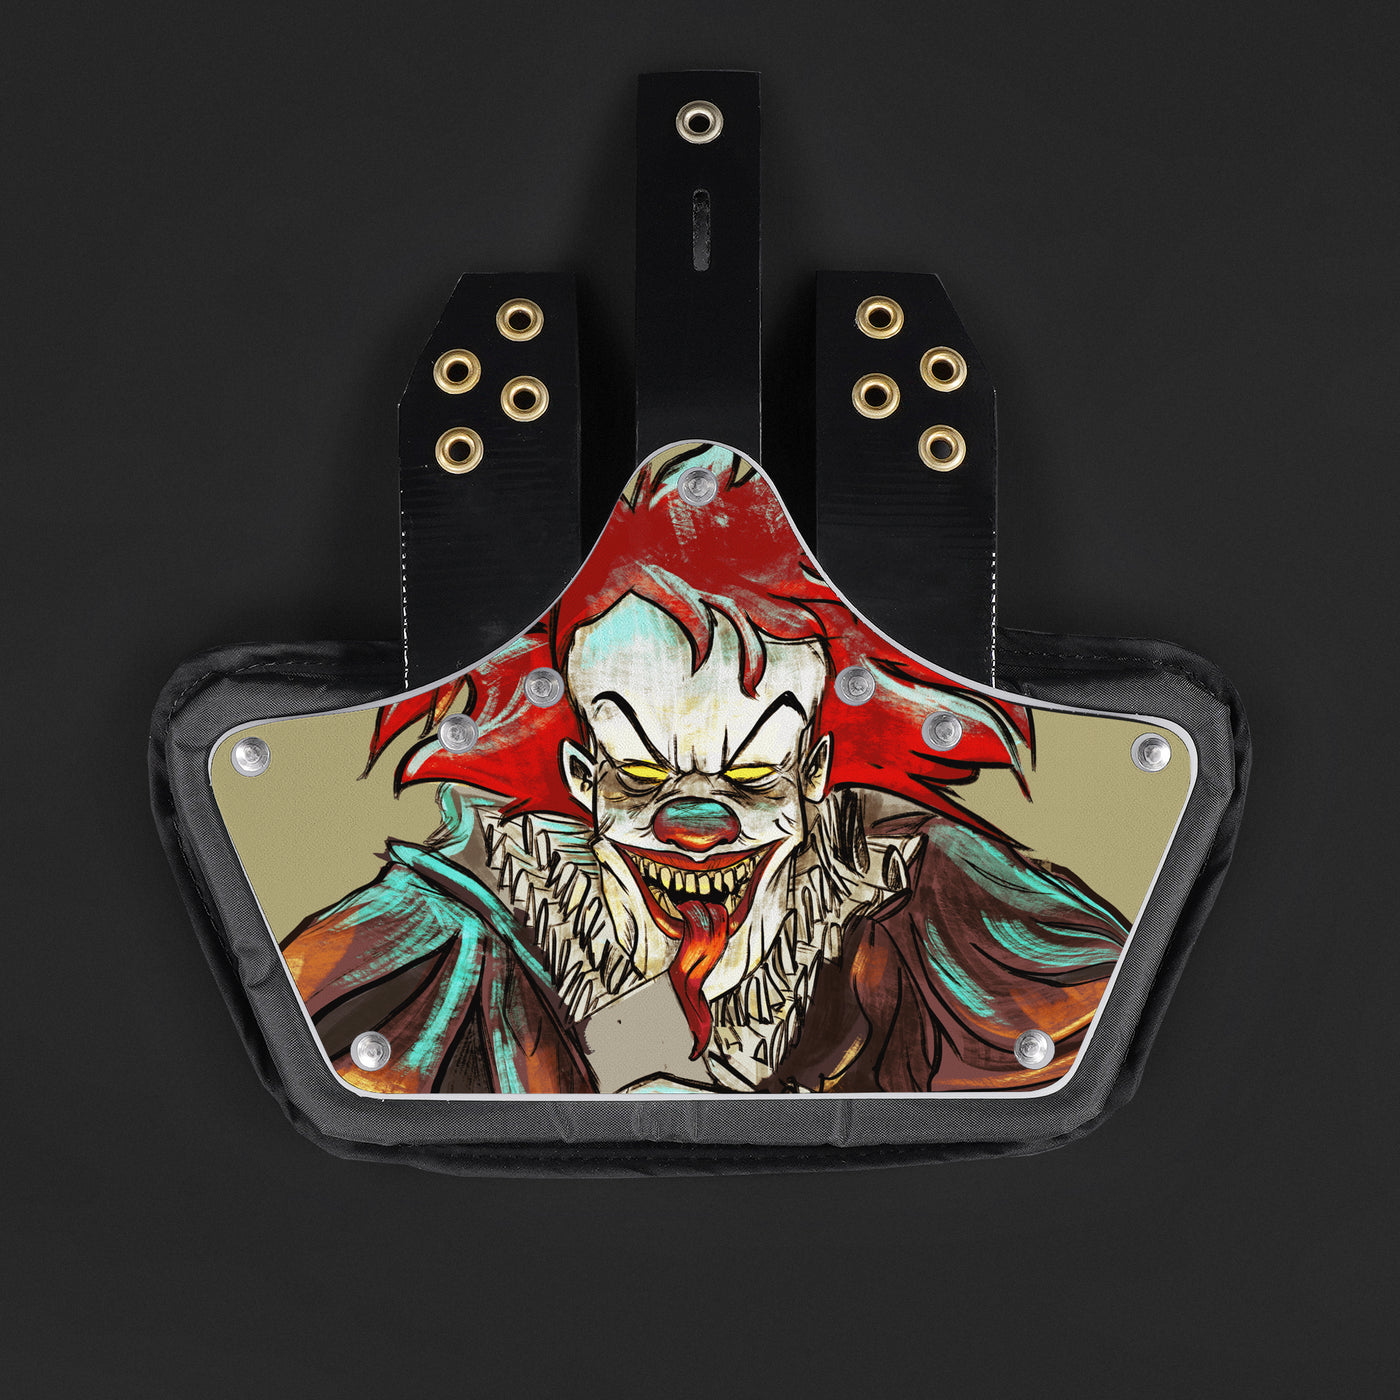 Evil Clown Sticker for Back Plate